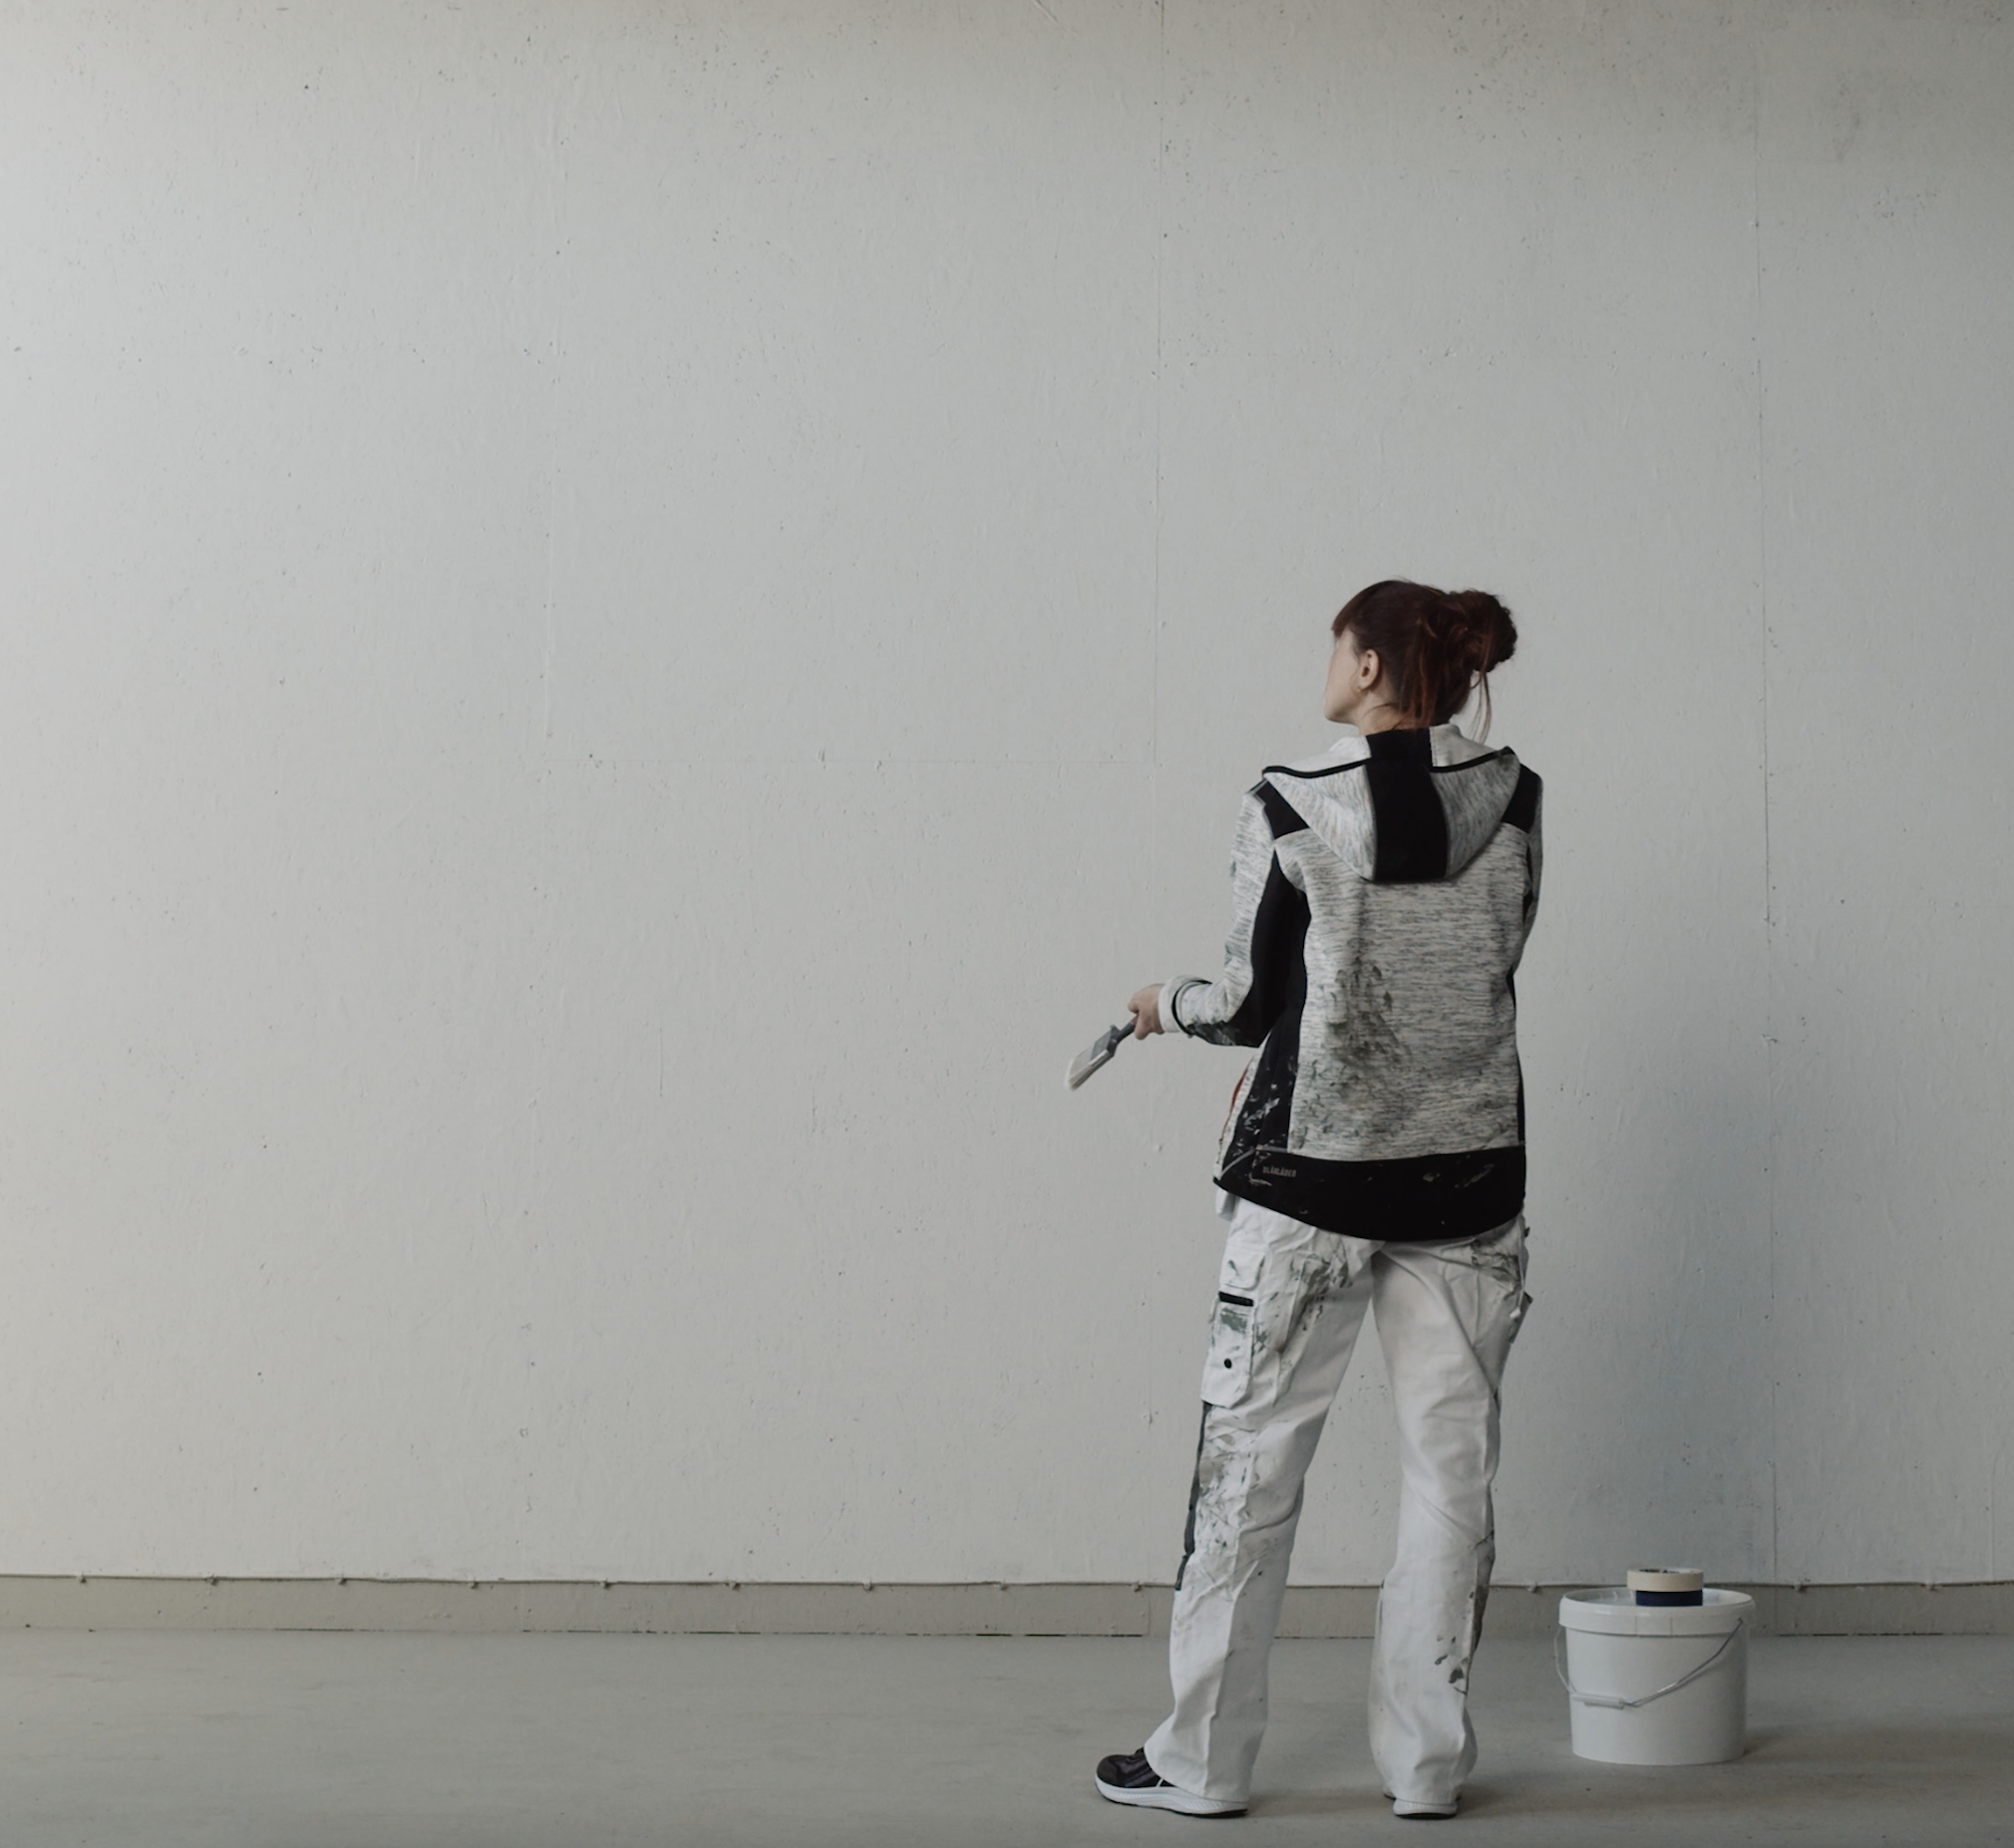 Målare framför stor vit vägg som håller liten pensel.